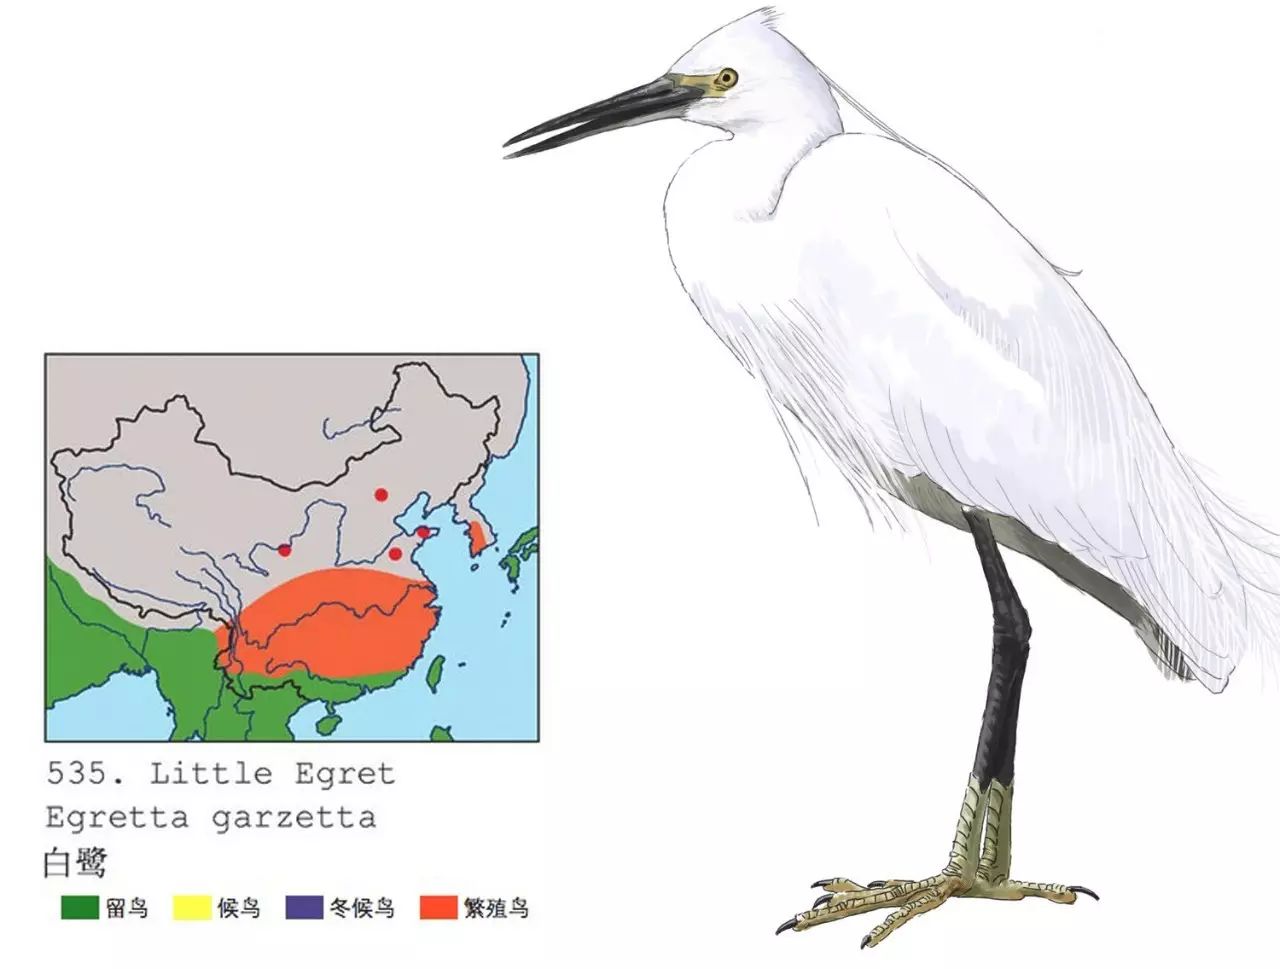 《中国十大常见鸟类》2017年历海报